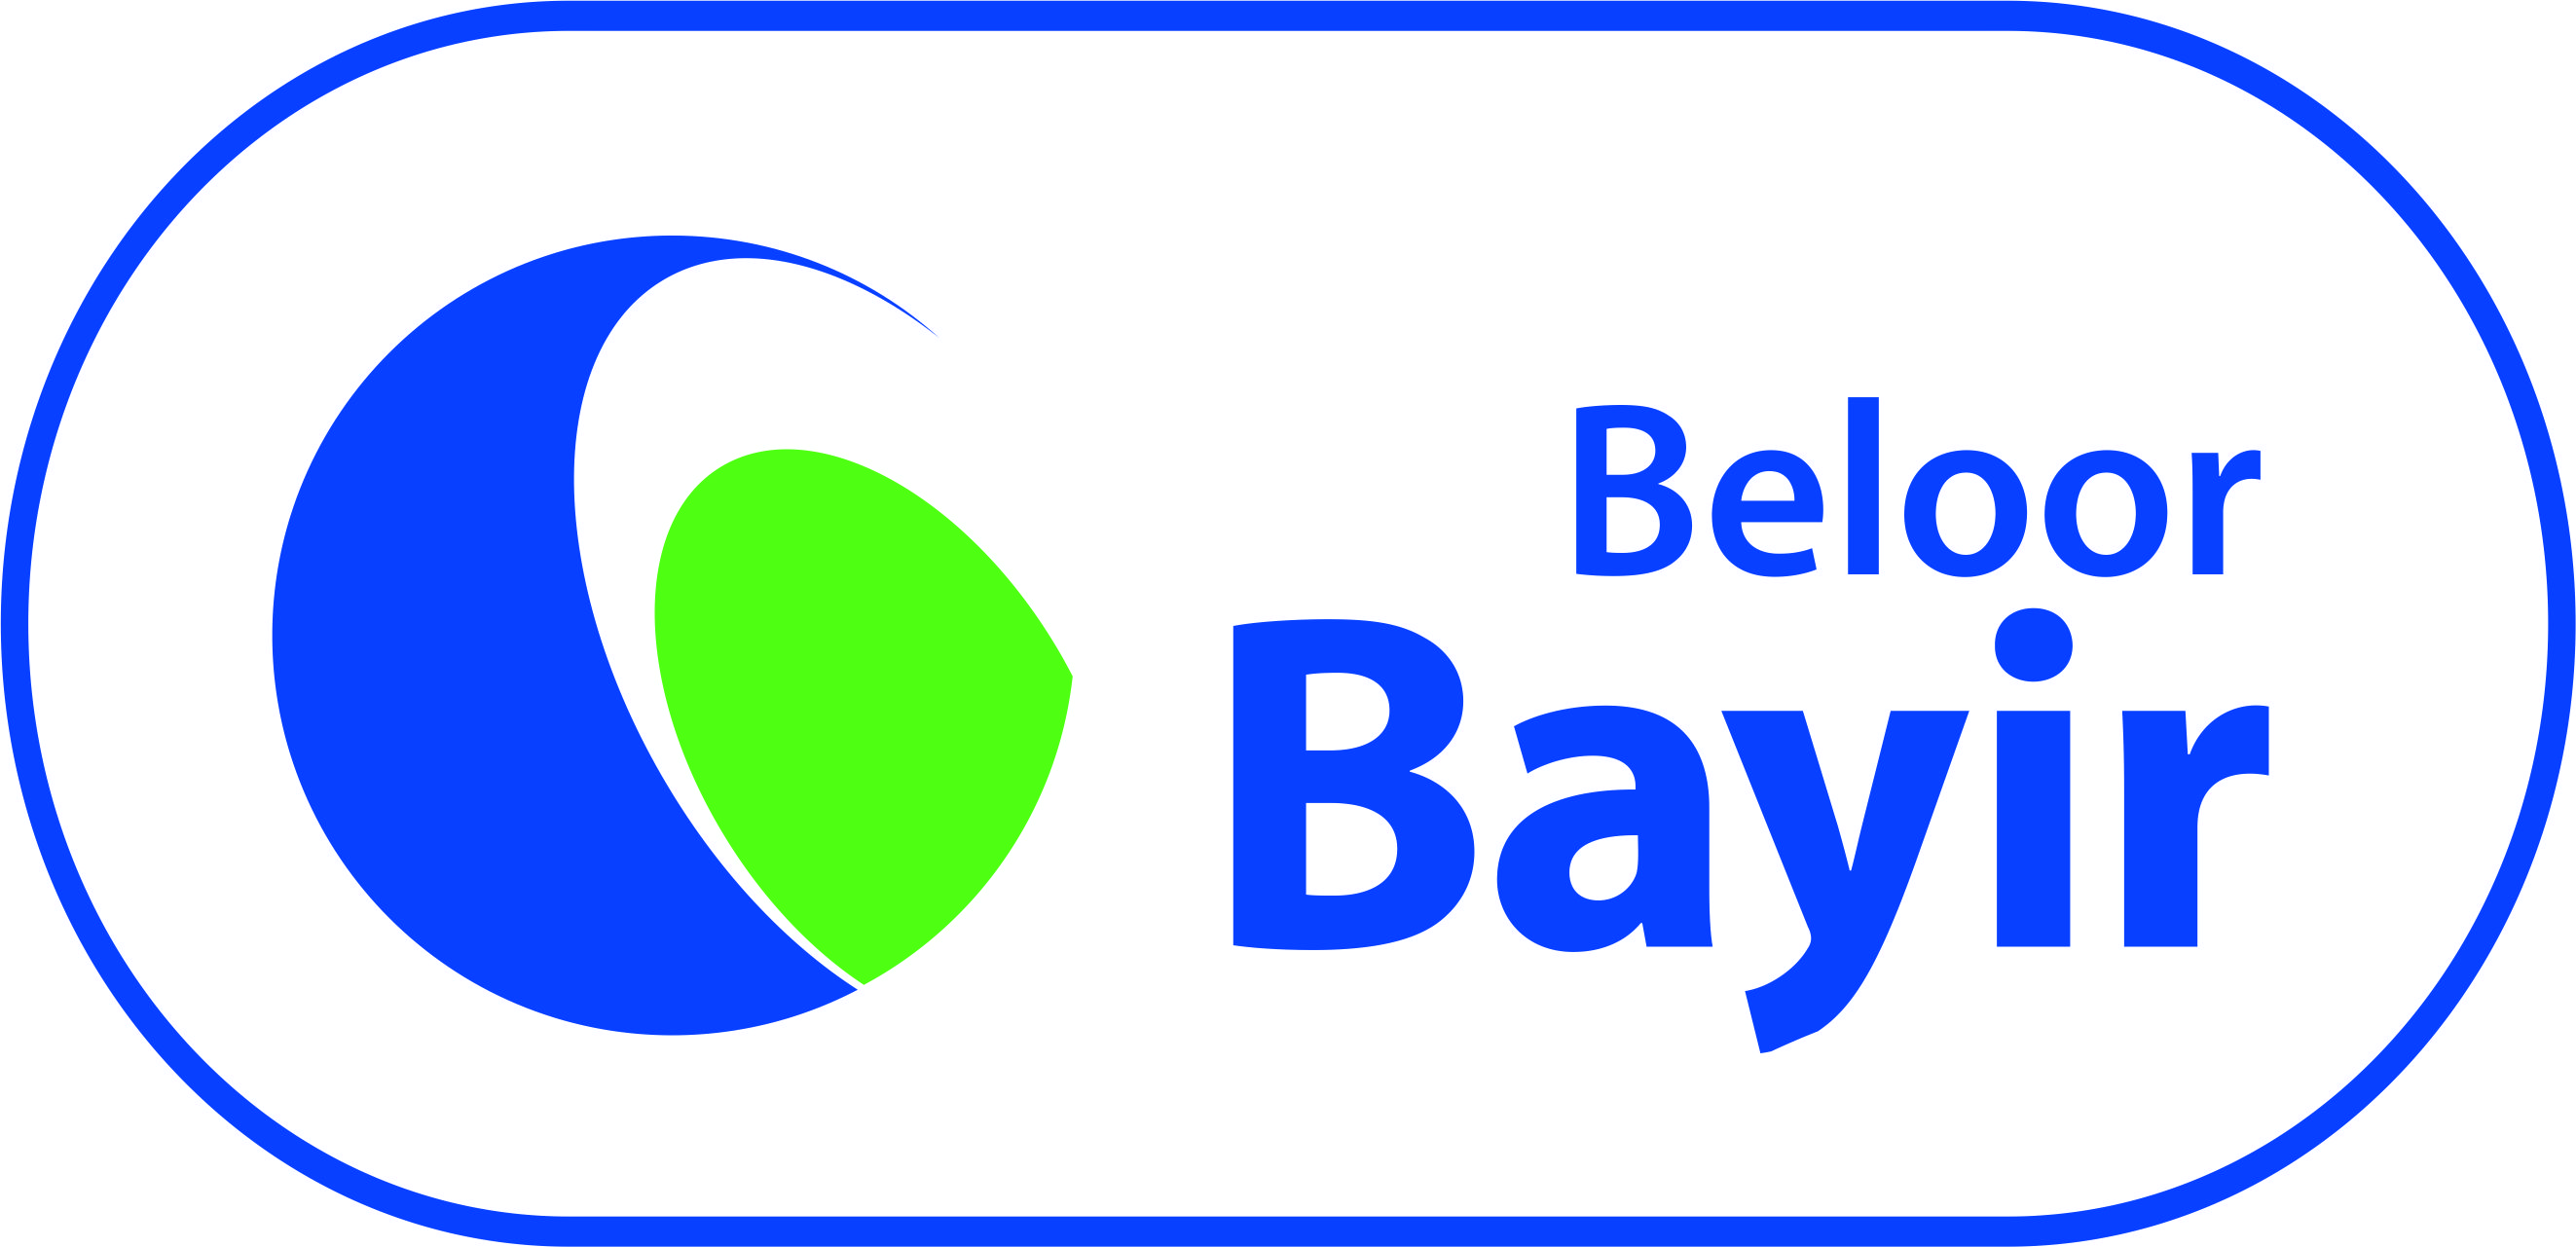 Beloorbayir Biotech Ltd